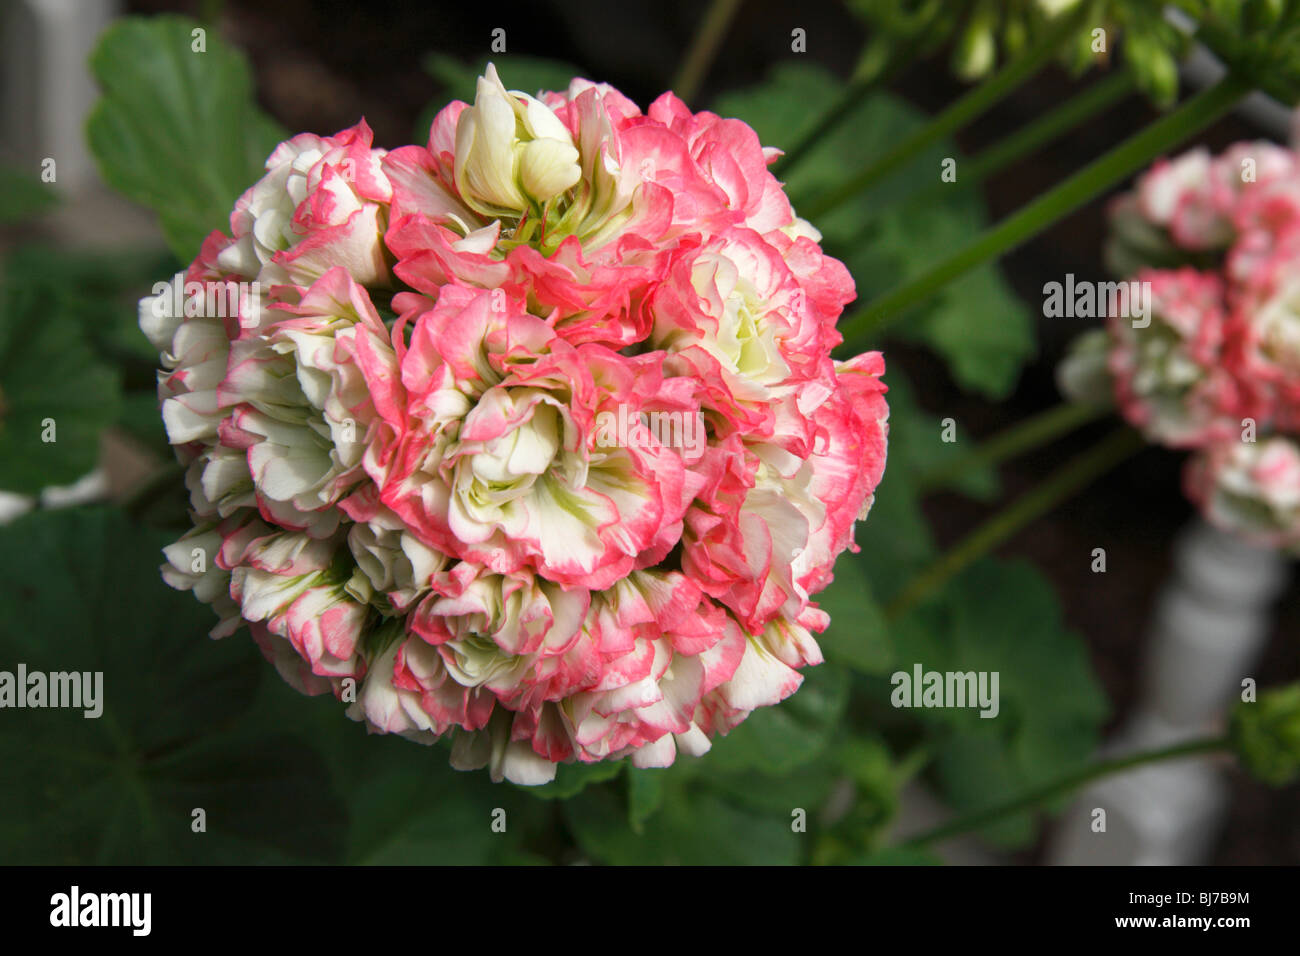 Flower of Pelargonium Apple Blossom Rosebud Stock Photo